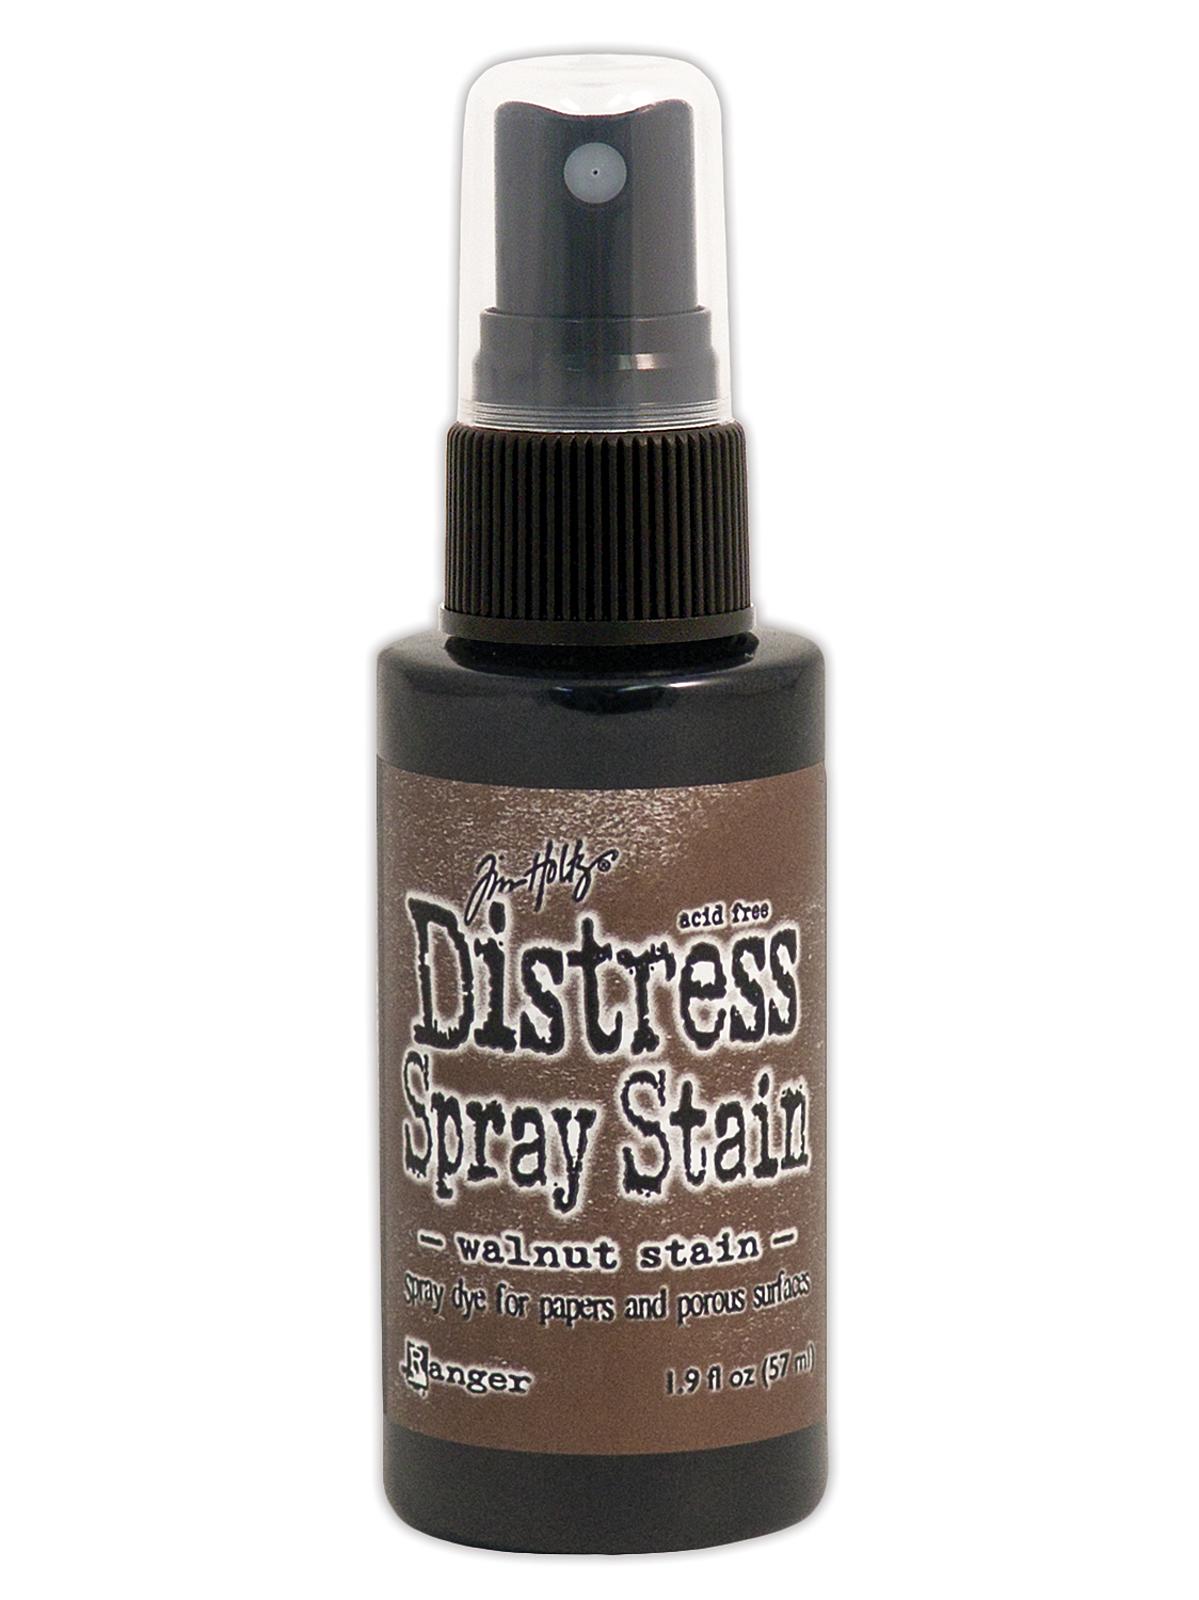 Tim Holtz Distress Oxide Sprays Walnut Stain 2 Oz. Bottle